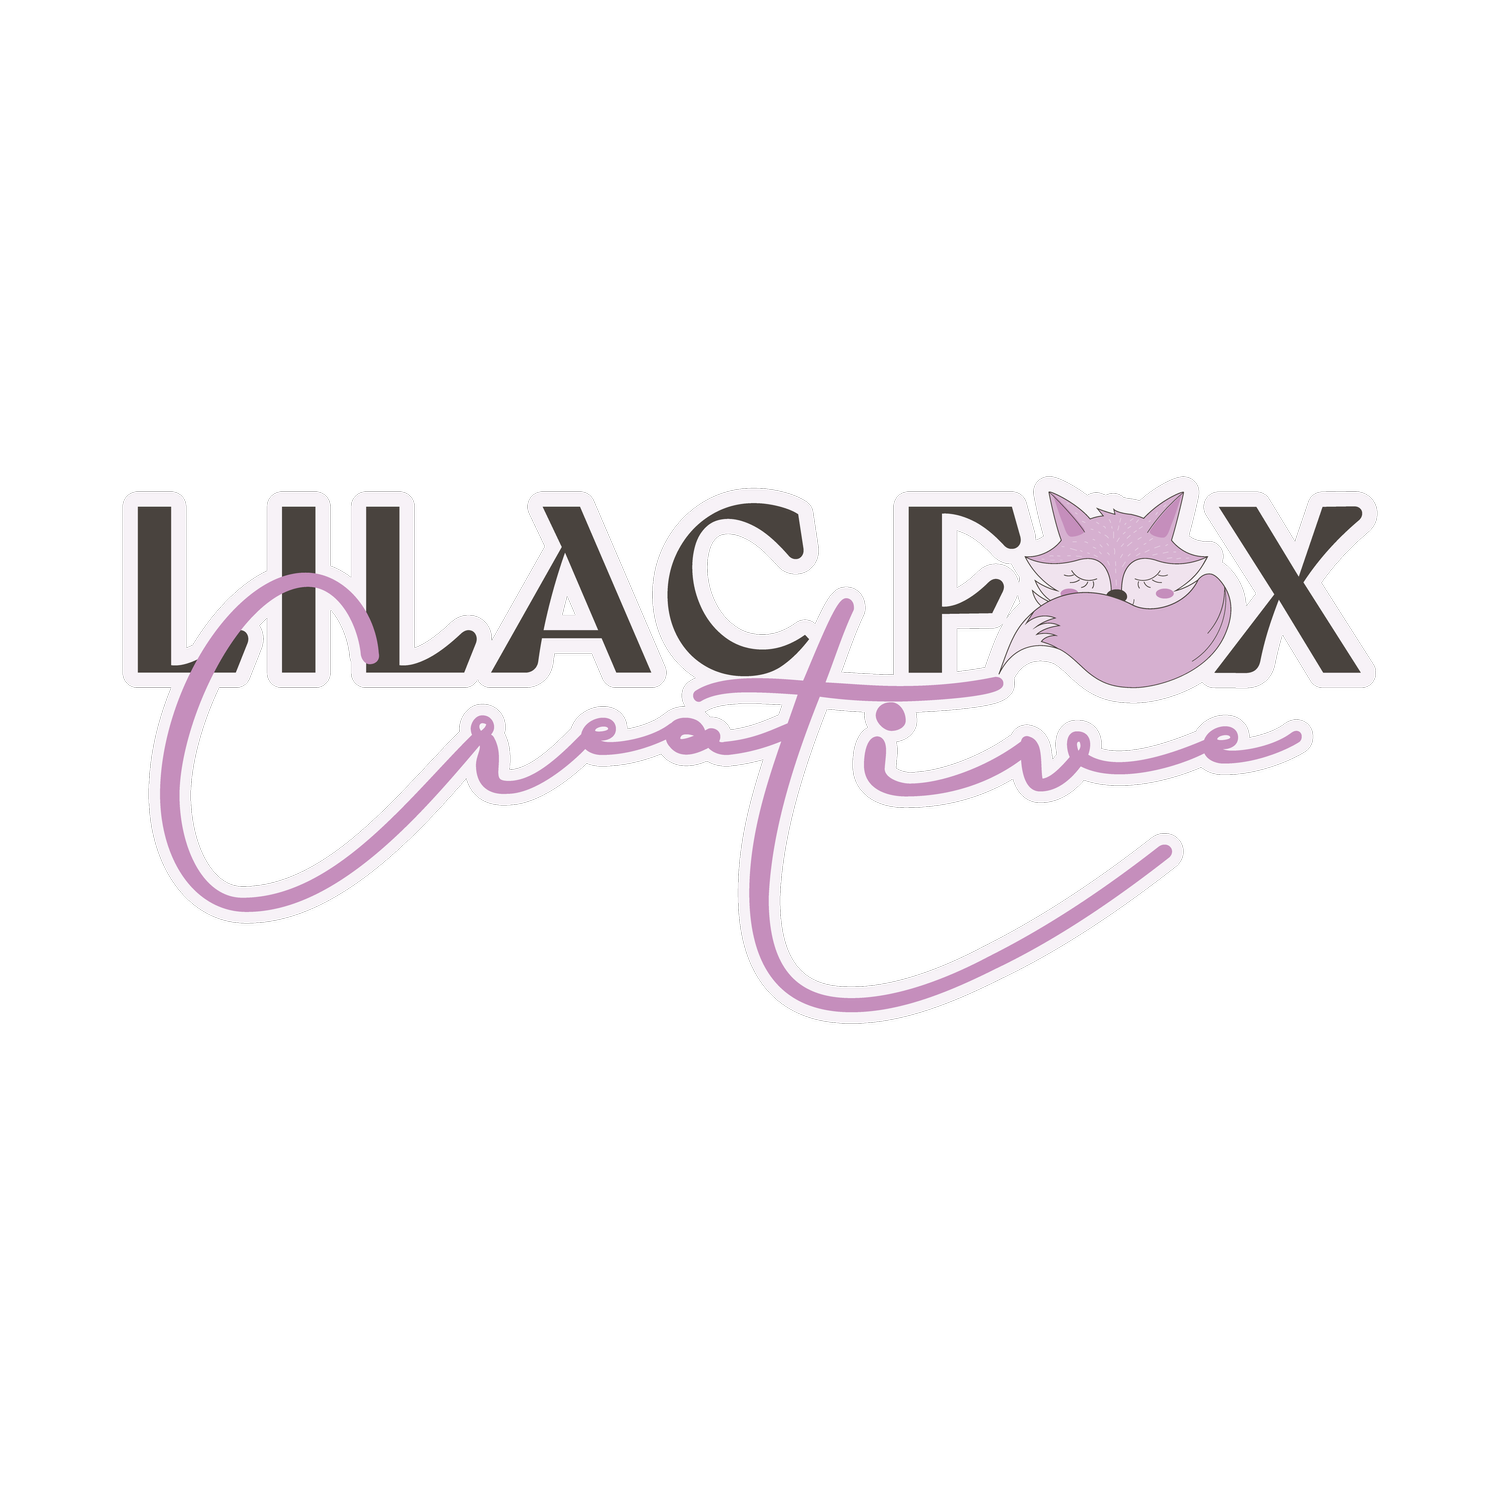 Lilac Fox Creative